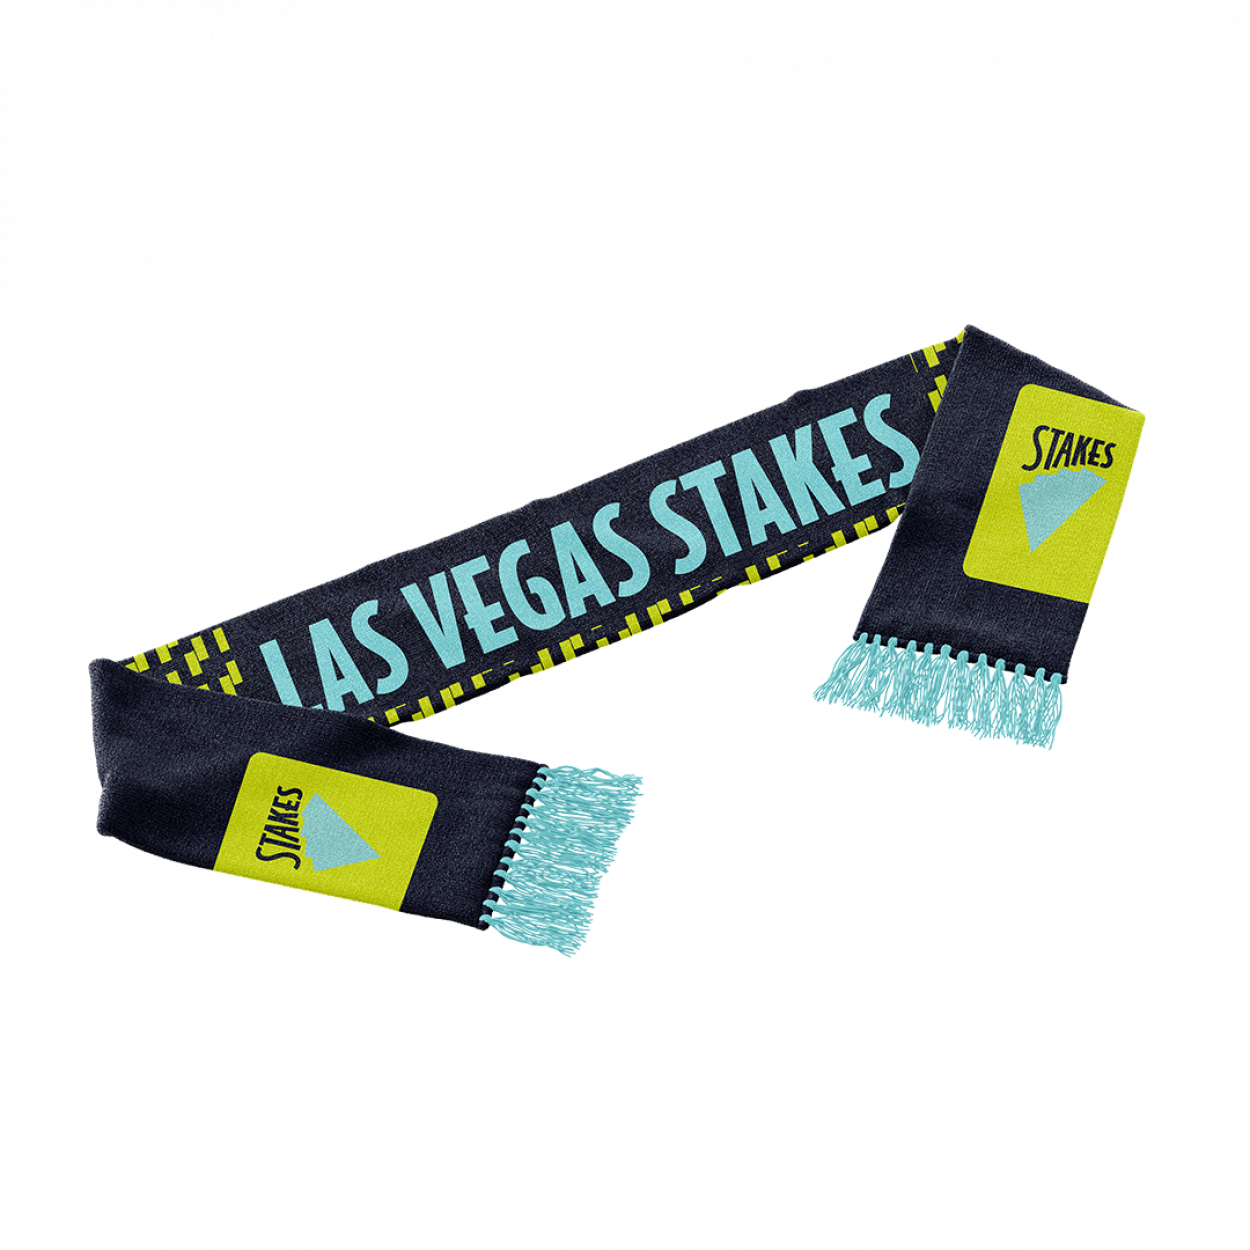 Las Vegas Stakes themed scarf.